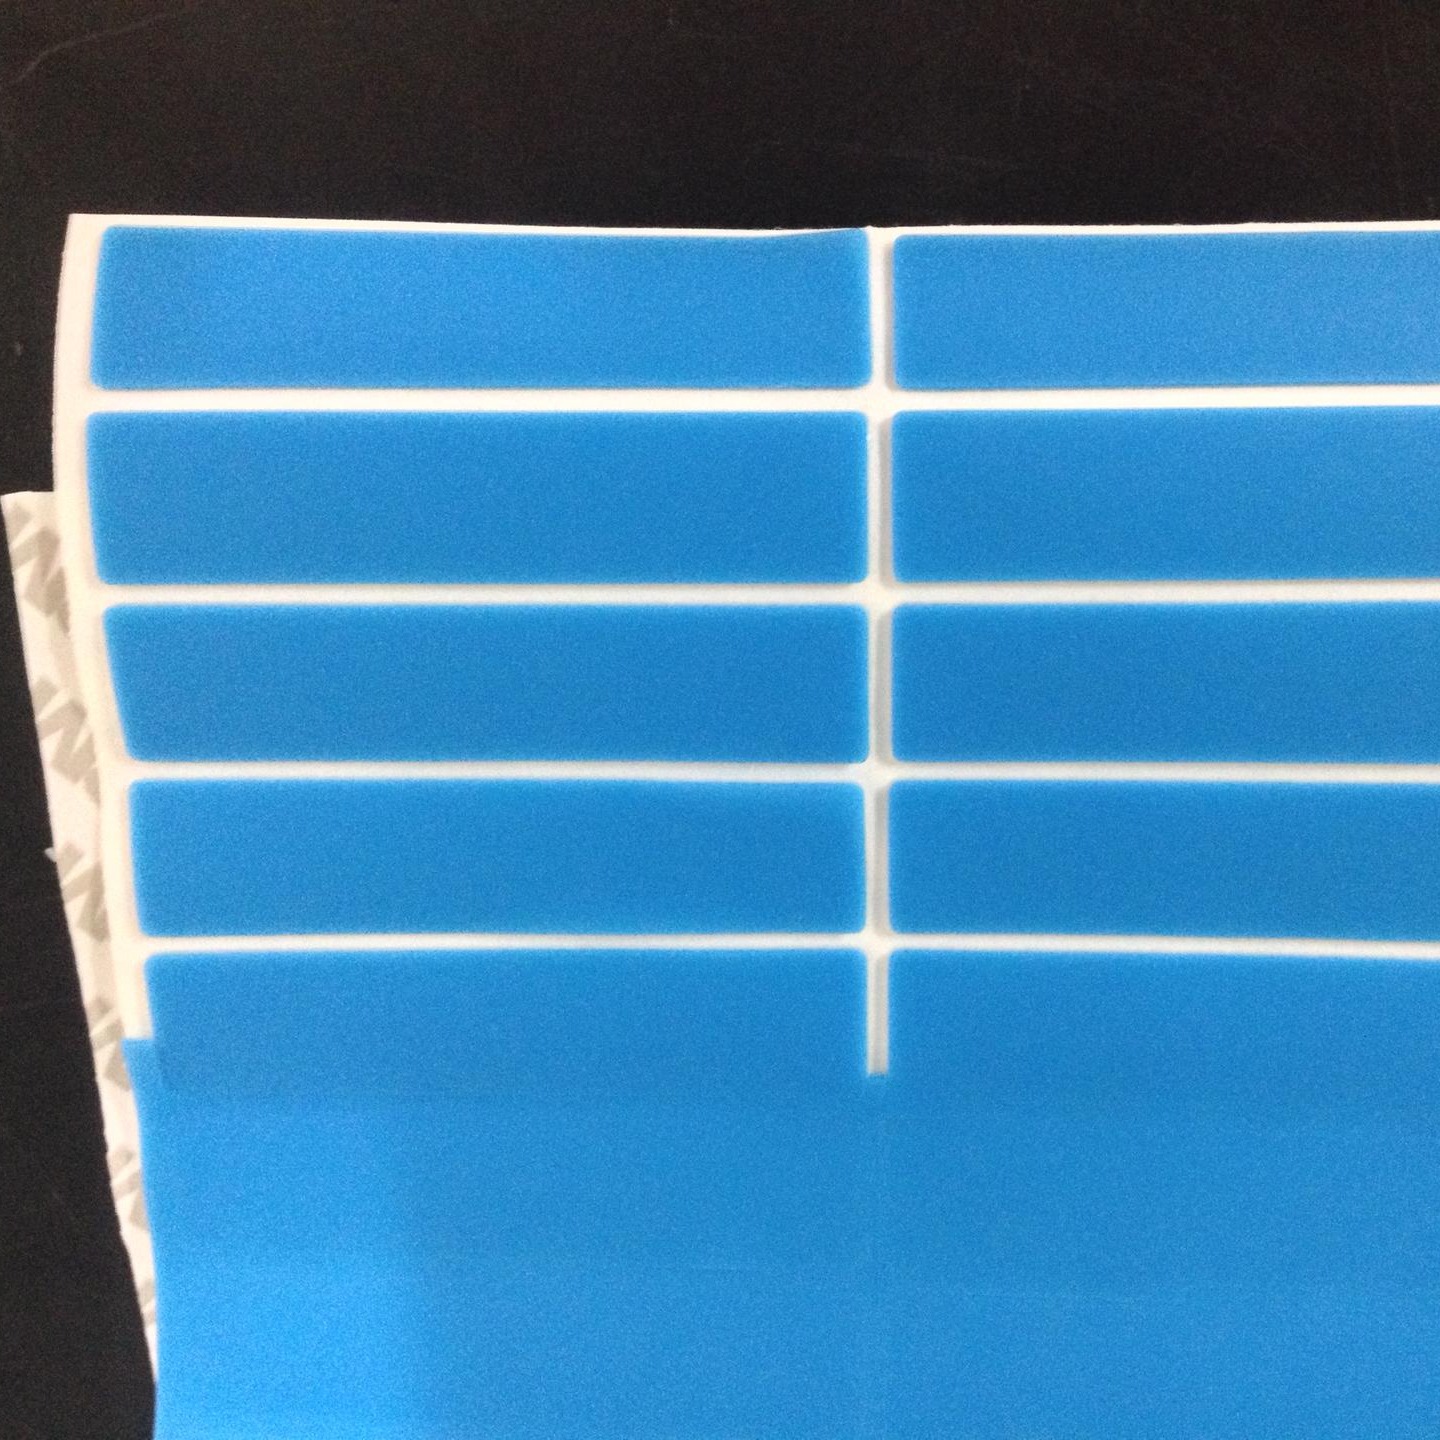 厂家专业生产硅胶防滑垫 红色硅胶垫 硅胶背3M胶垫 彩色硅胶垫 蓝色硅胶垫 黑色硅胶垫